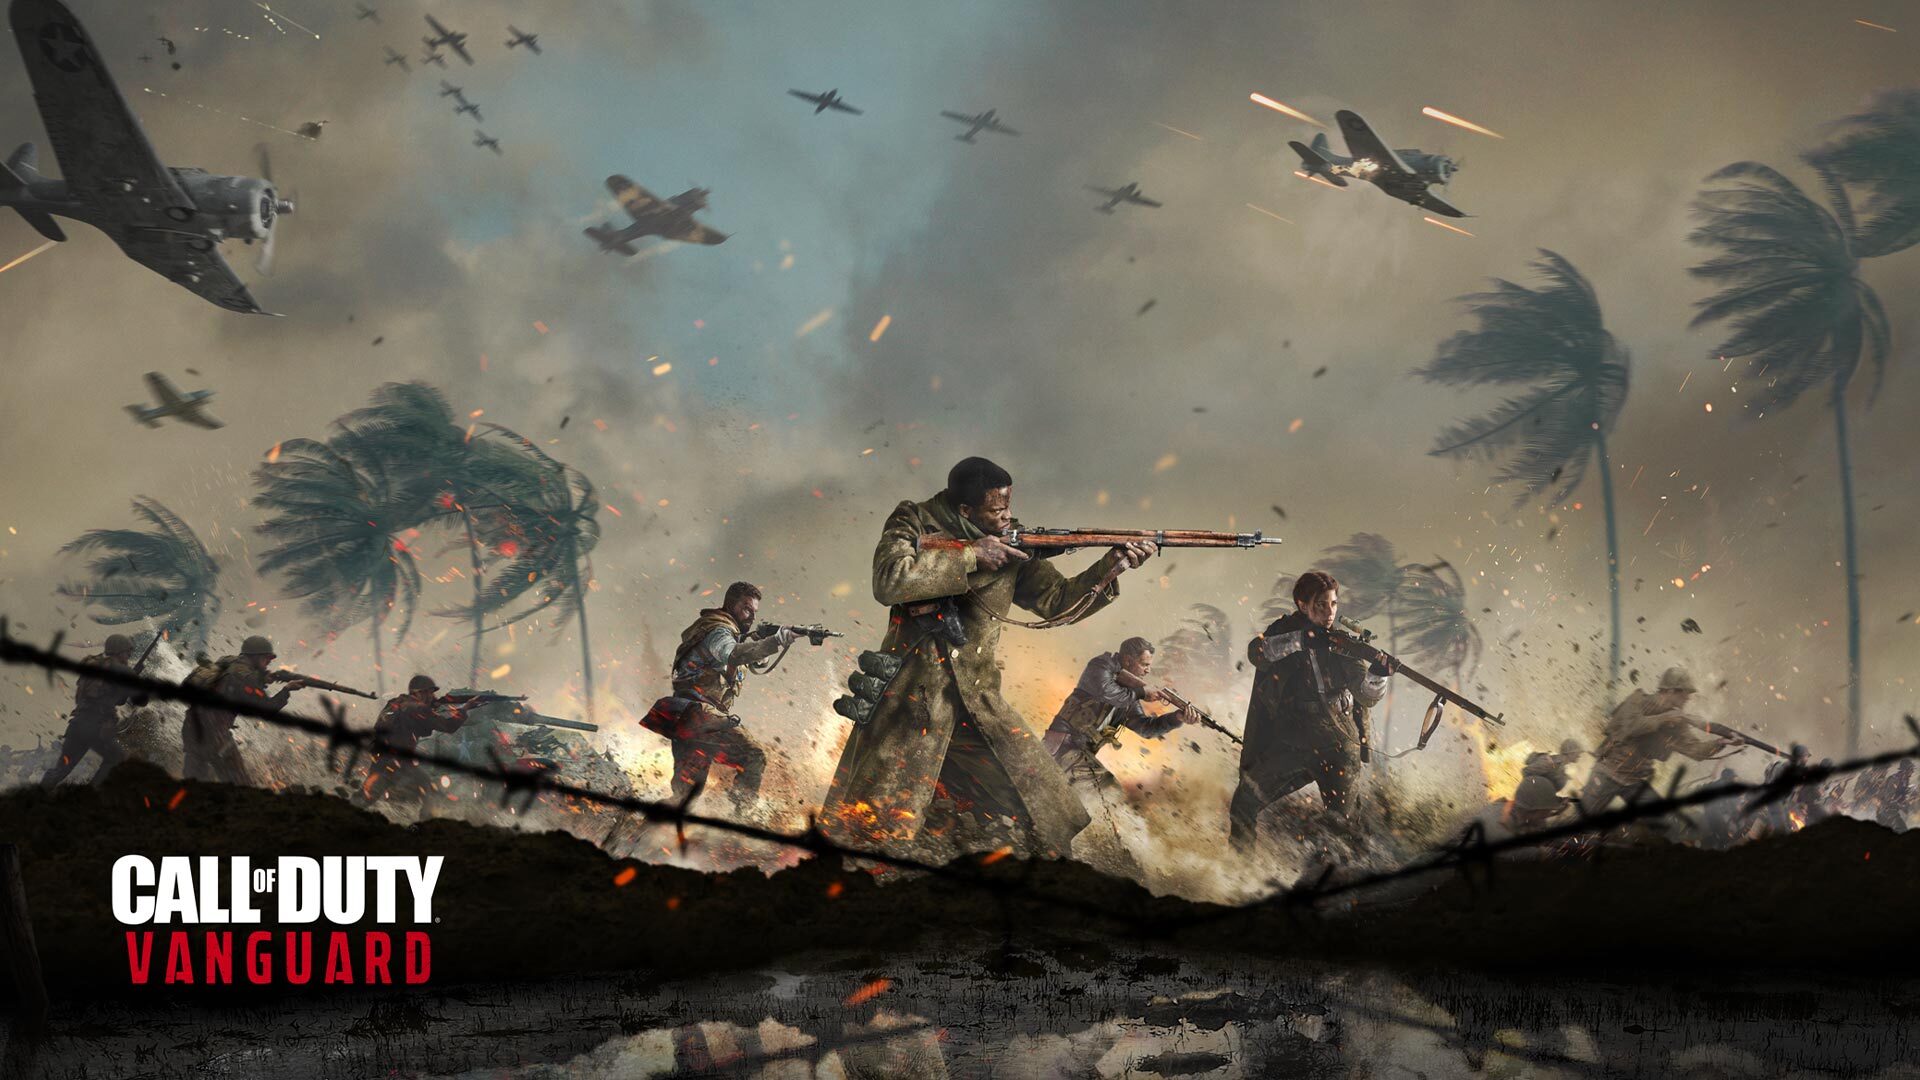 “الجديد في التحديث” أدوات لعبة كول أوف ديوتي Call Of Duty 2021 تساعدك على تحقيق الفوز